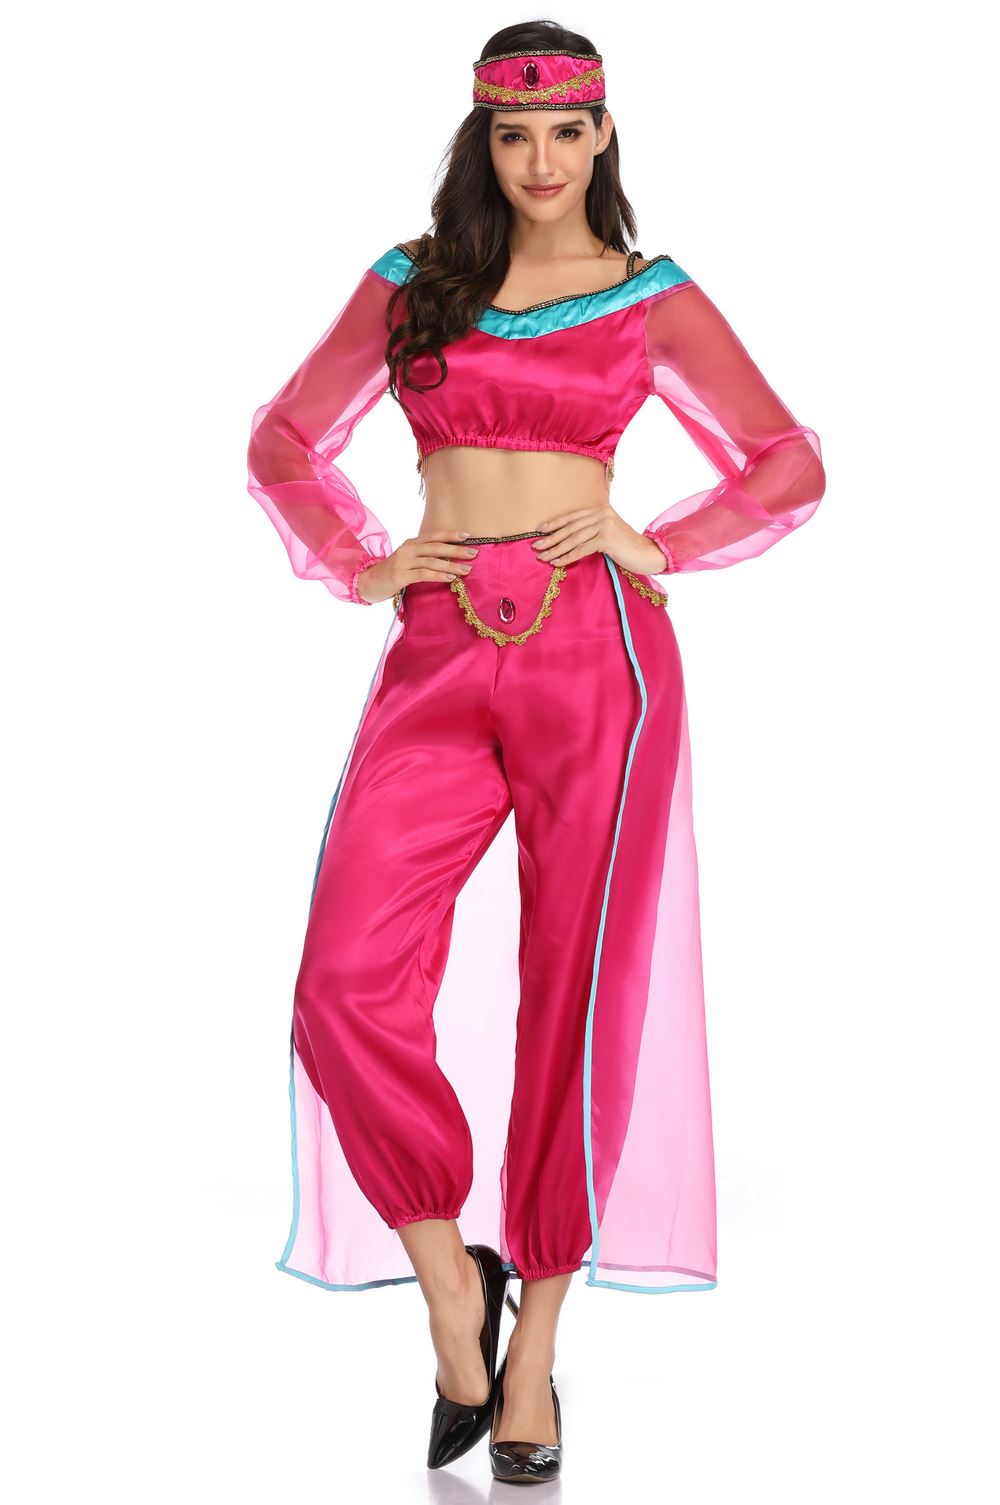 jasmine costume pink